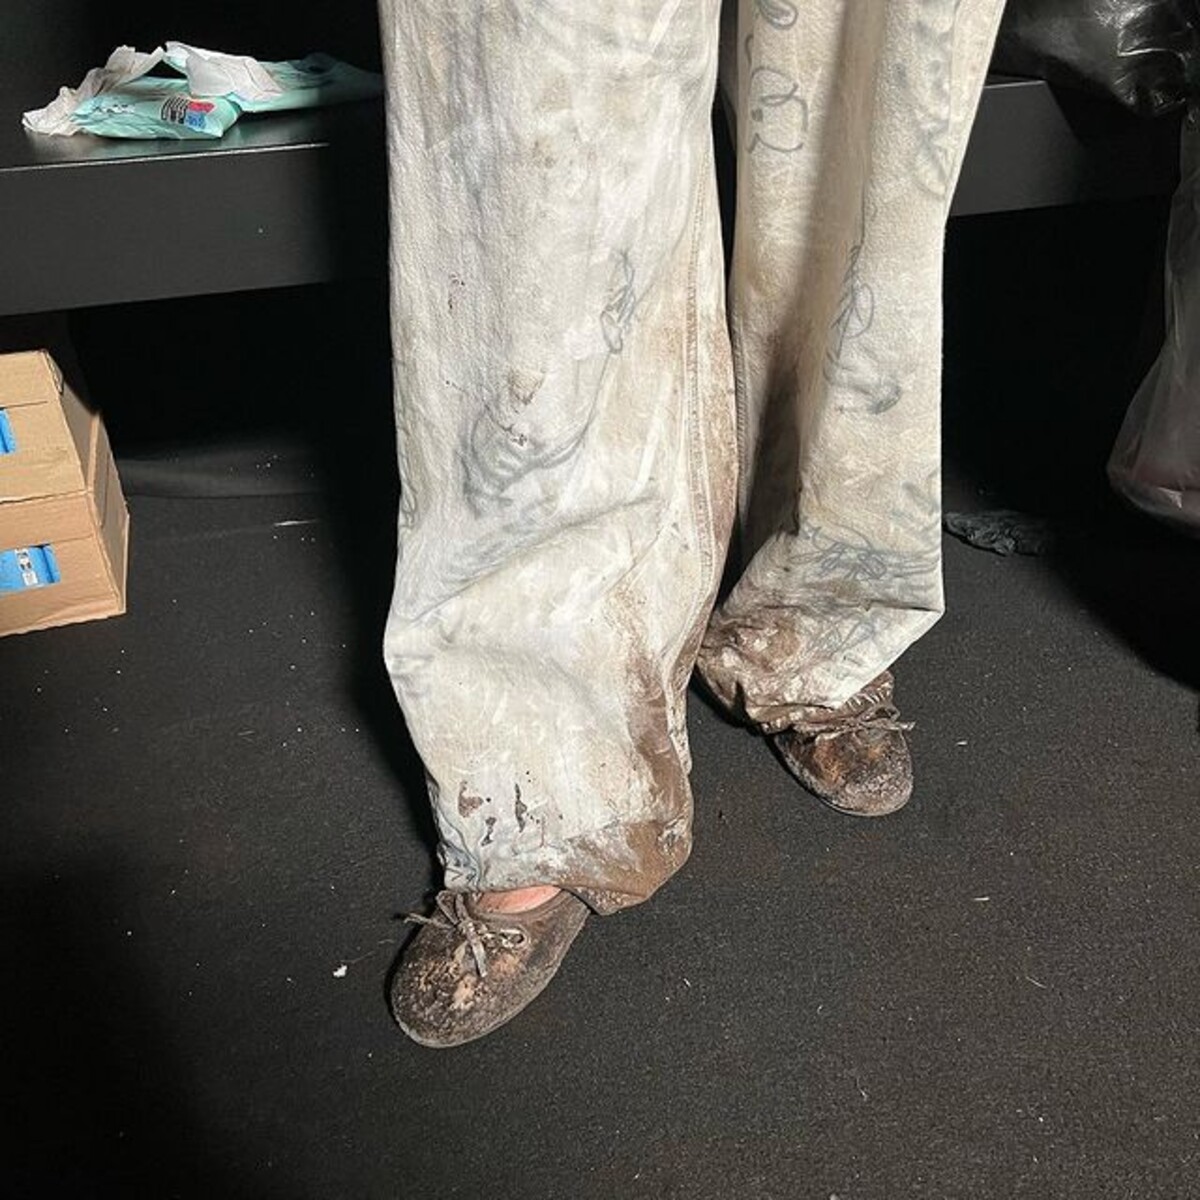 Kreatívny riaditeľ značky Balenciaga Demna Gvasalia si pre modely balerín neodpustil efekt špinavej a opotrebovanej obuvi.